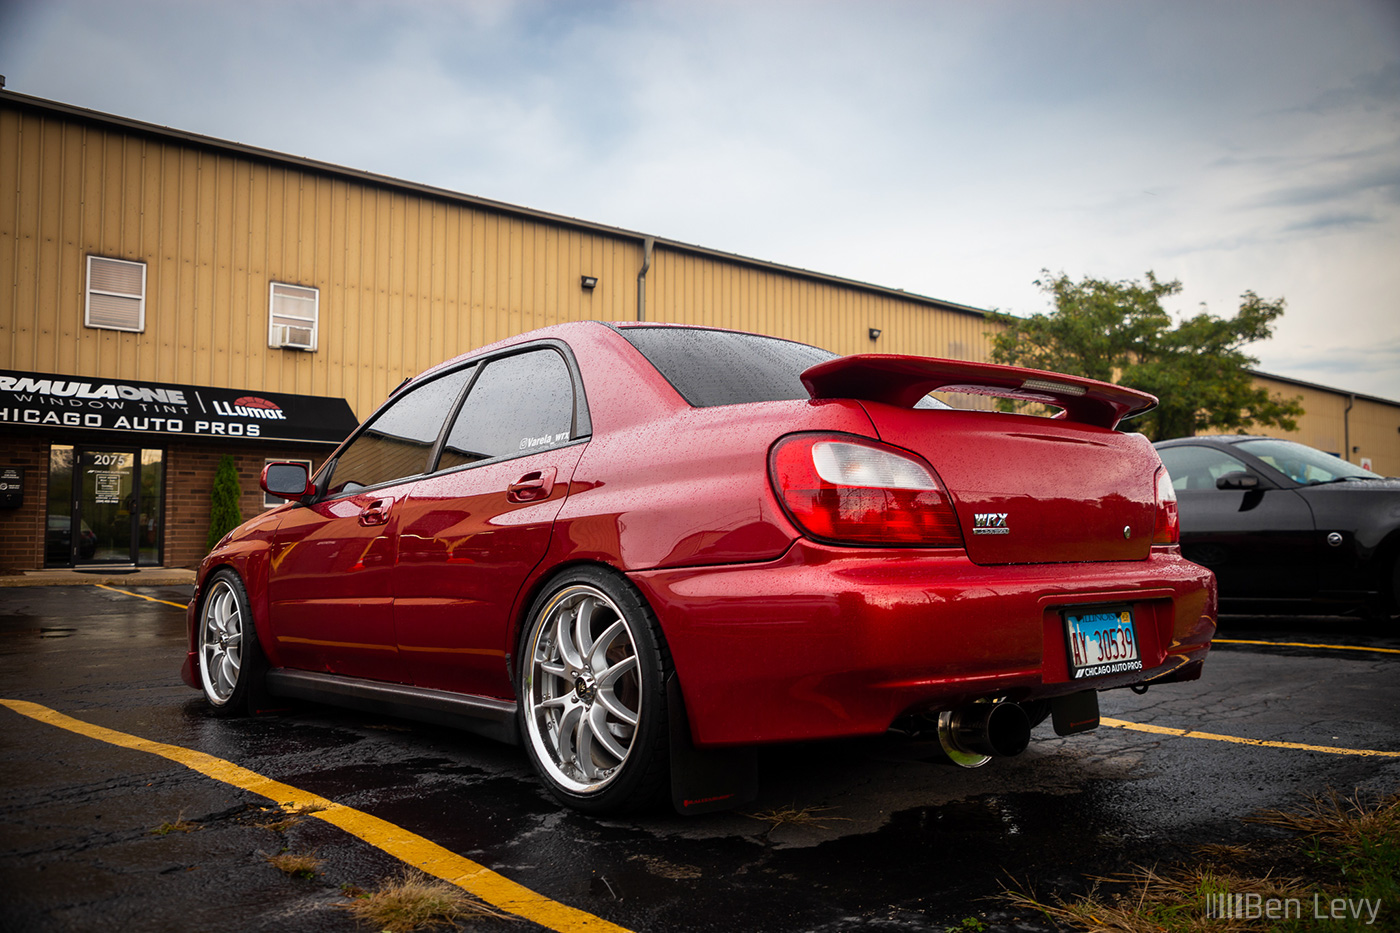 Chris's Red Subaru WRX